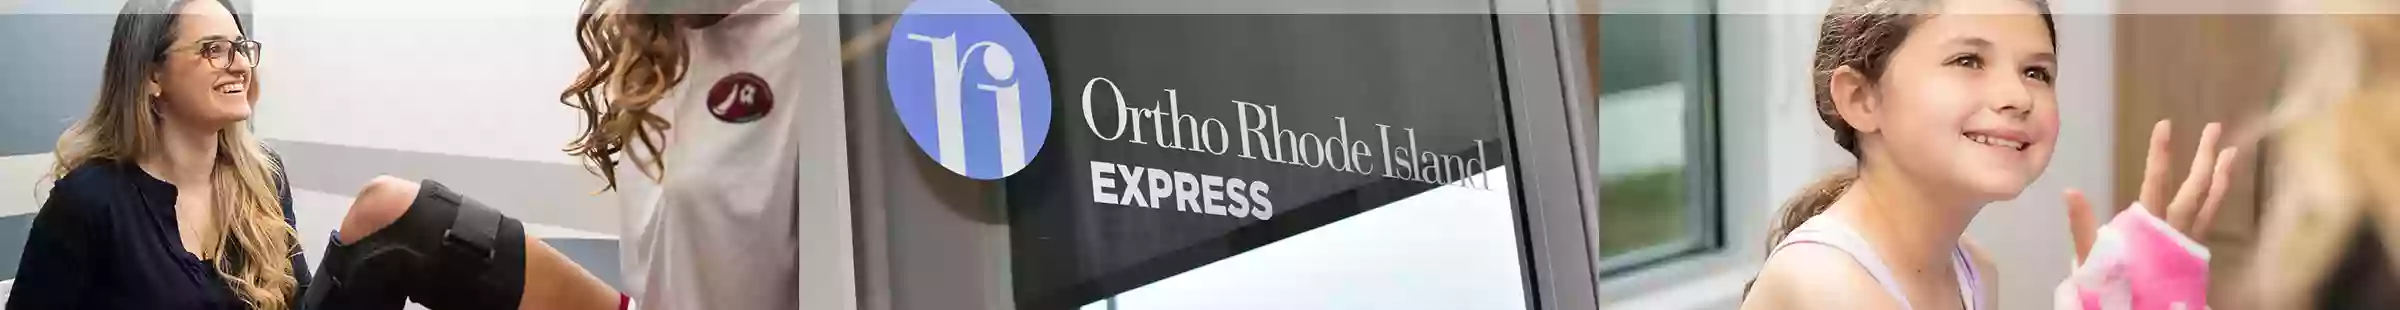 Ortho RI Express